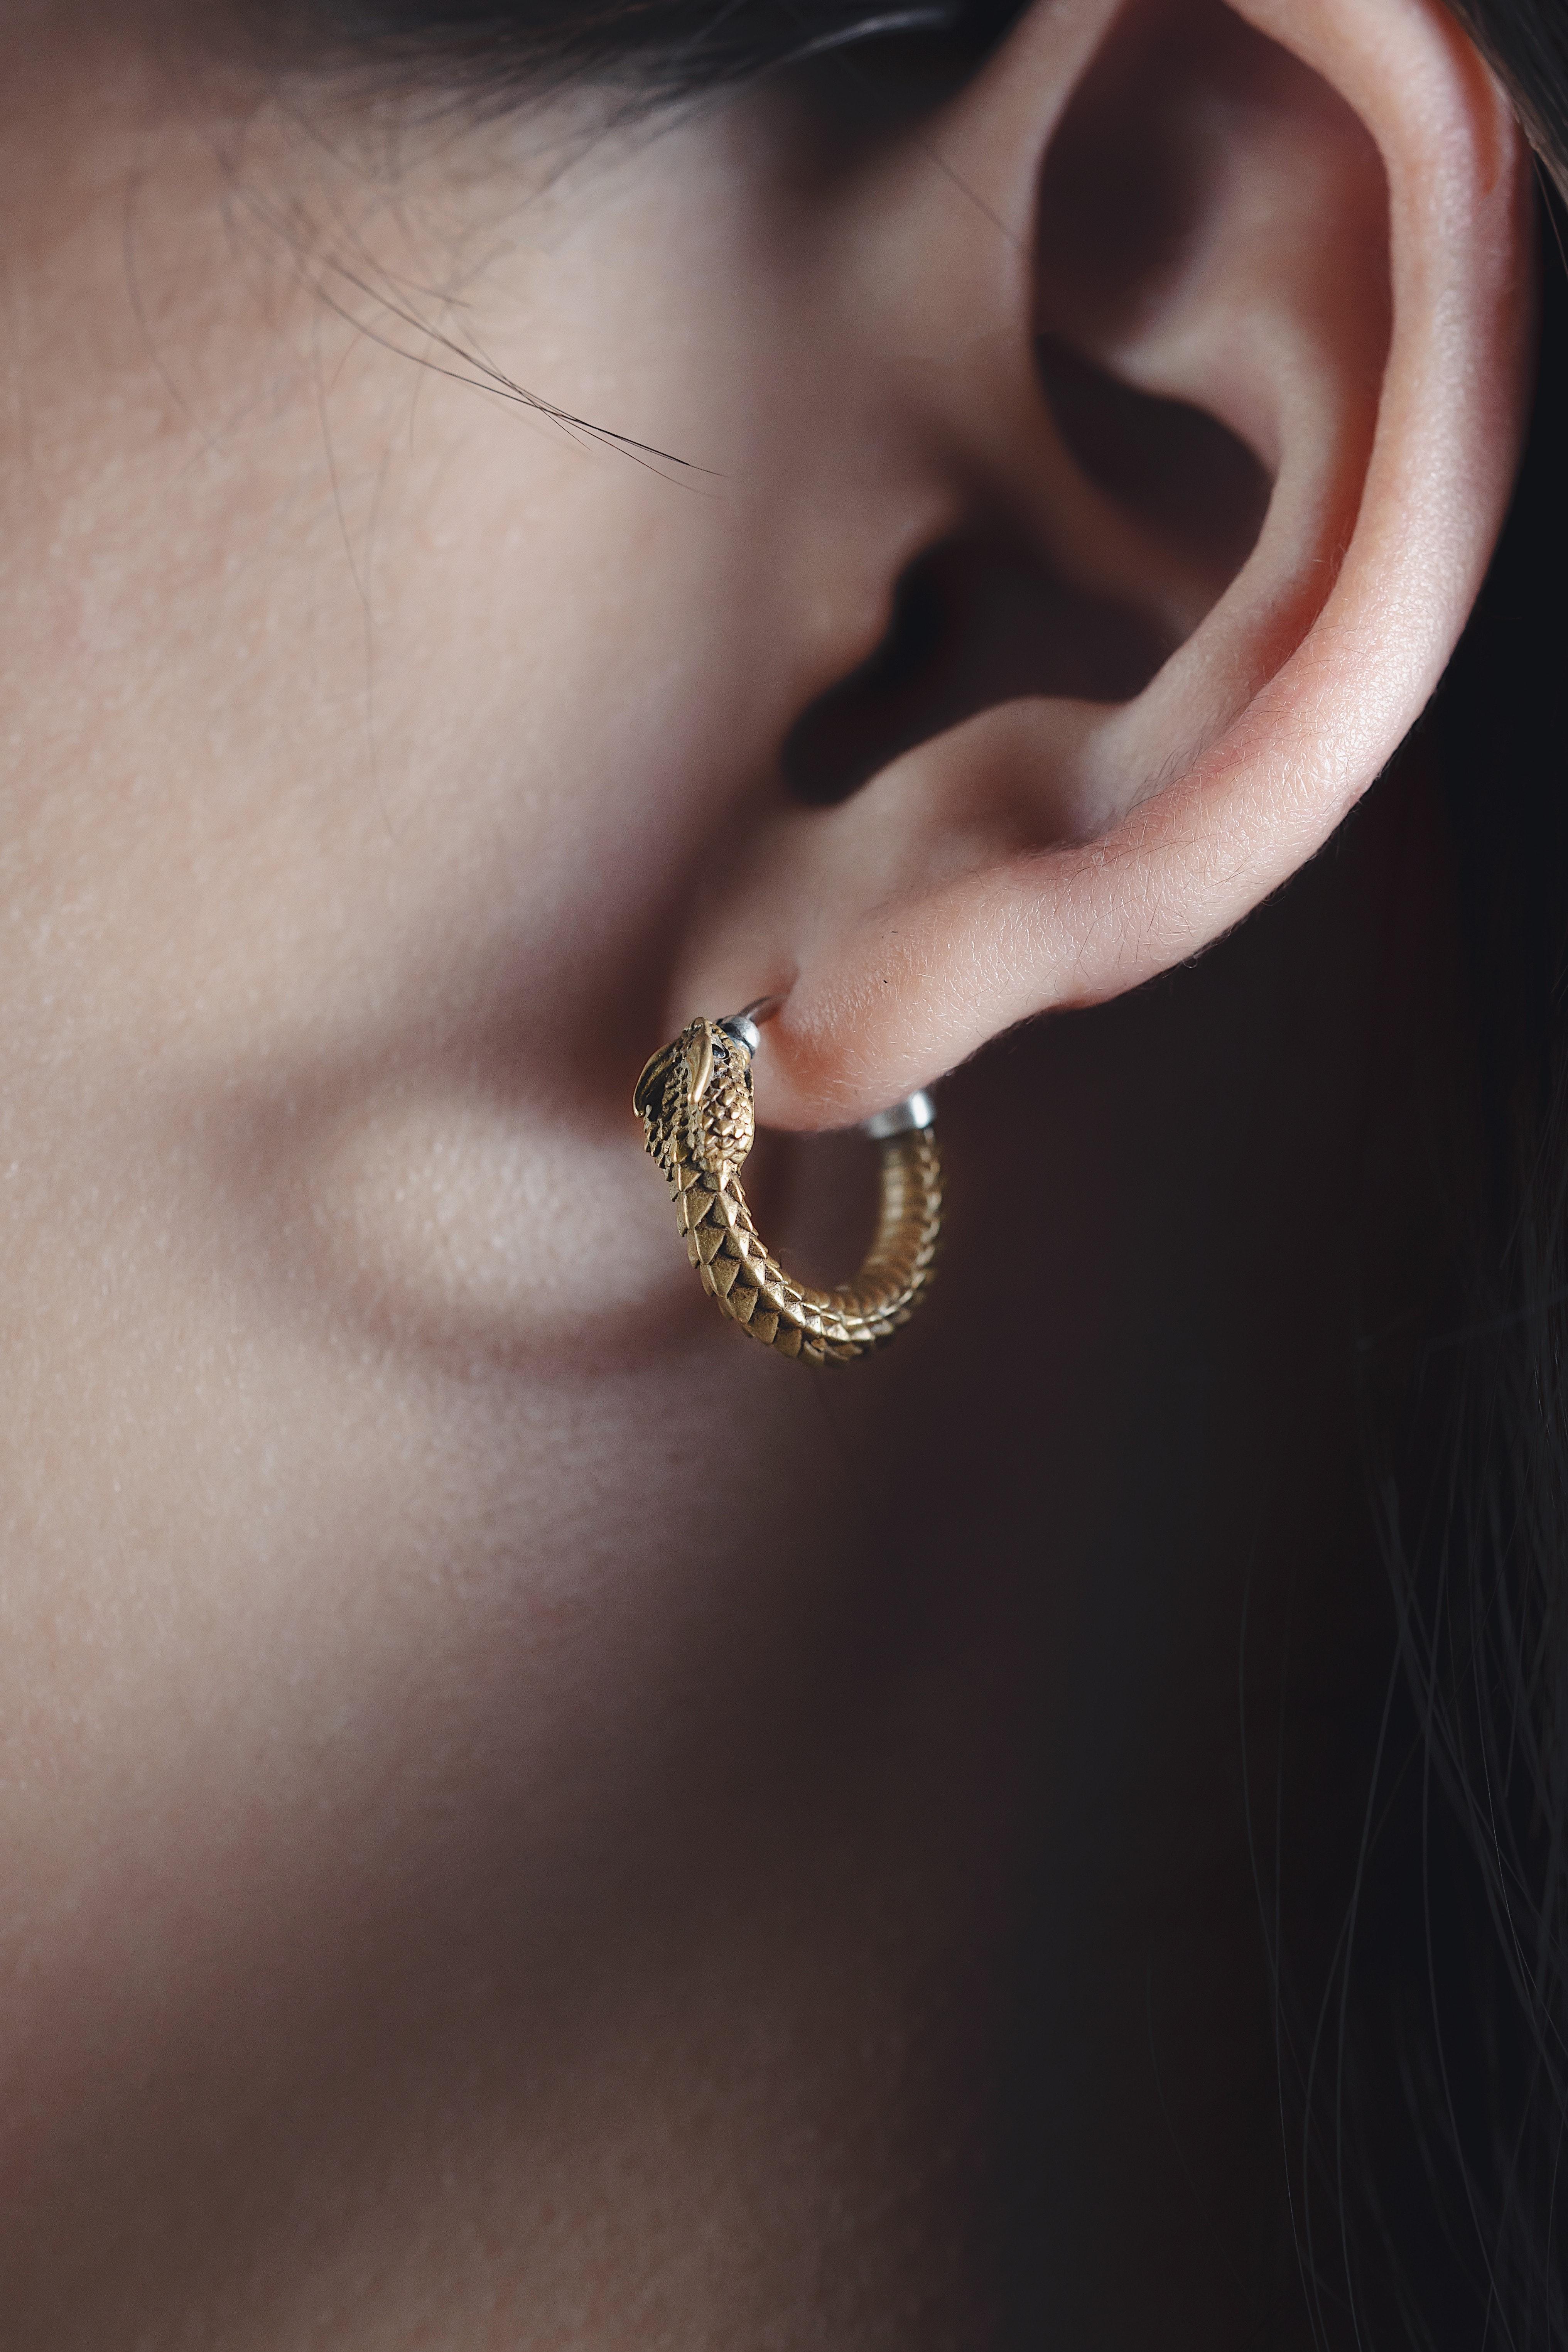 Do magnetic earrings fall off easily? 